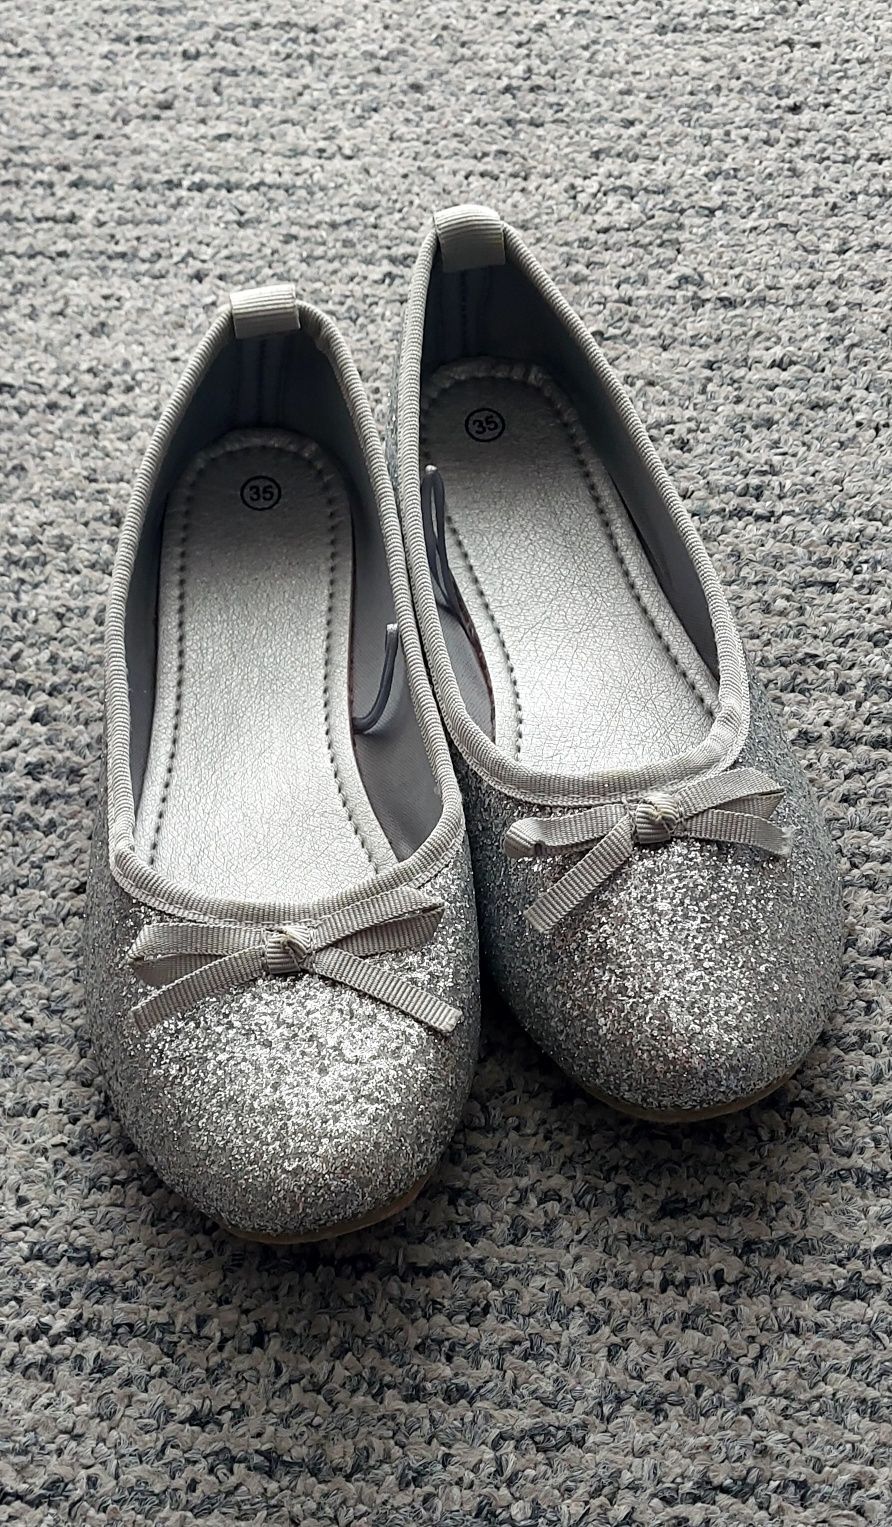 Buty dla dziewczynki - rozmiar 35